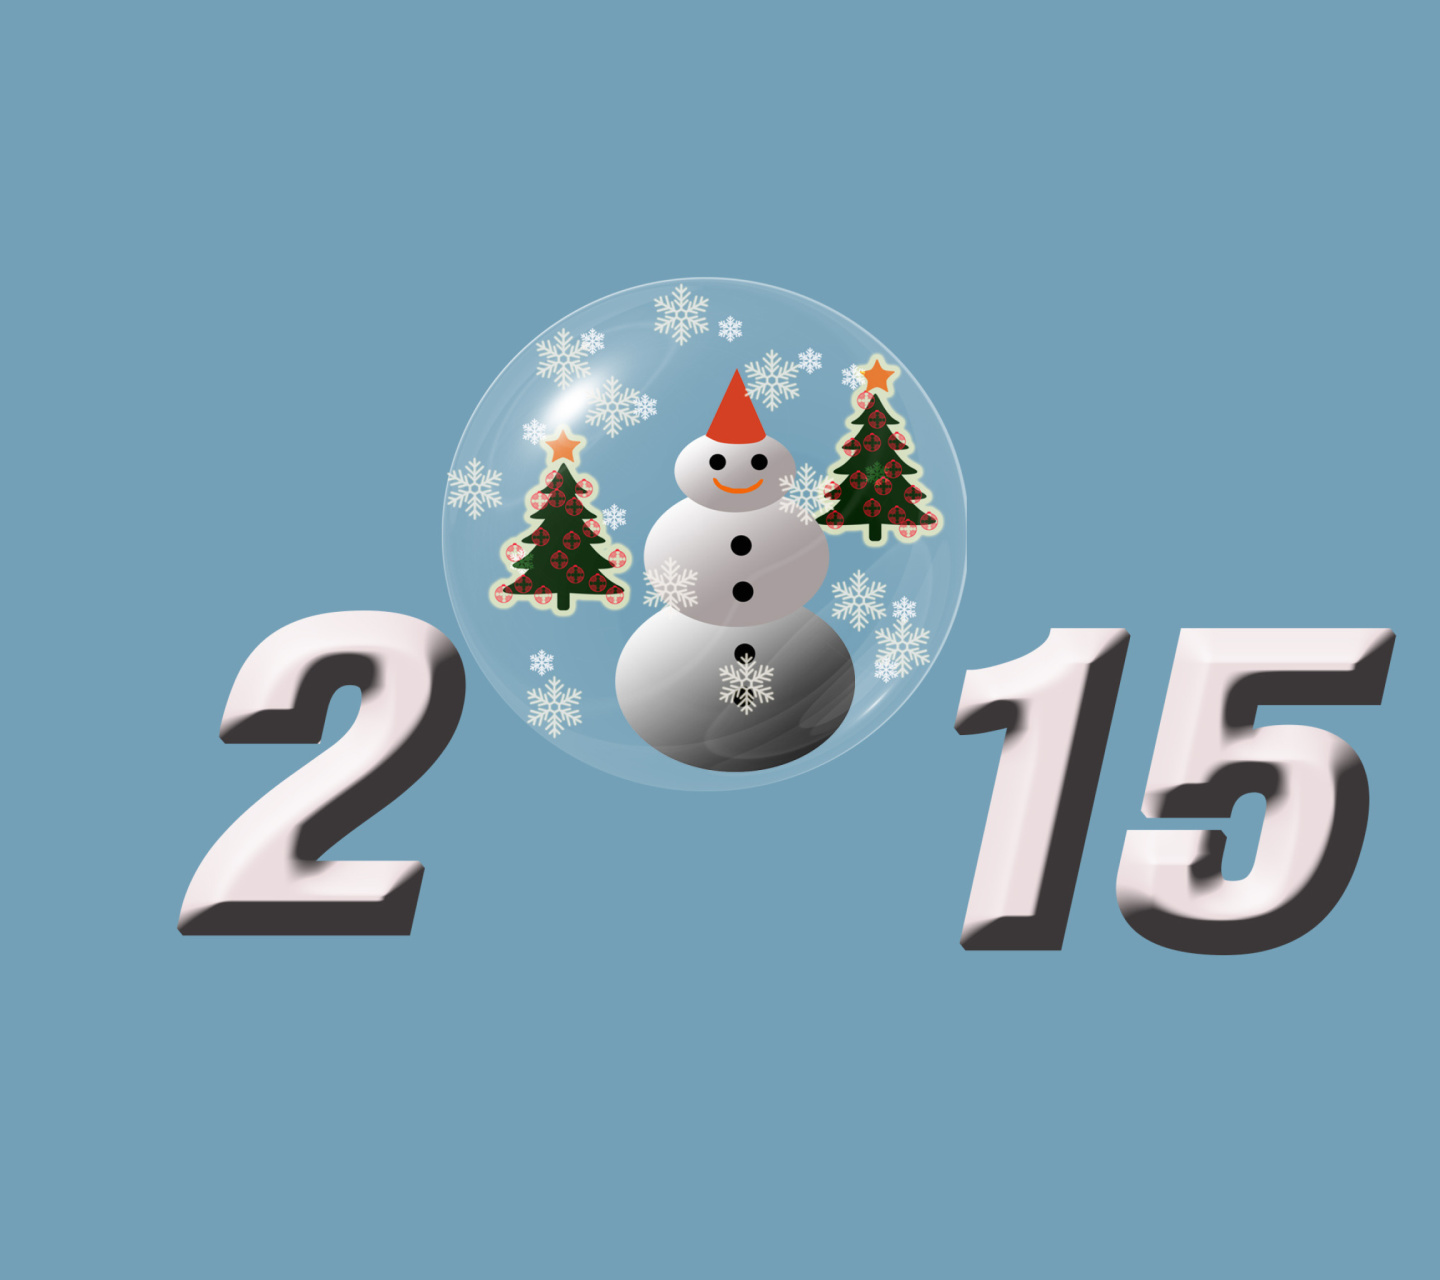 2015 год чего. Картинки 2015 года. Новогодние обои 2015 год на рабочий стол. Новогодние картинки 2021 год. Обои 2007 года.